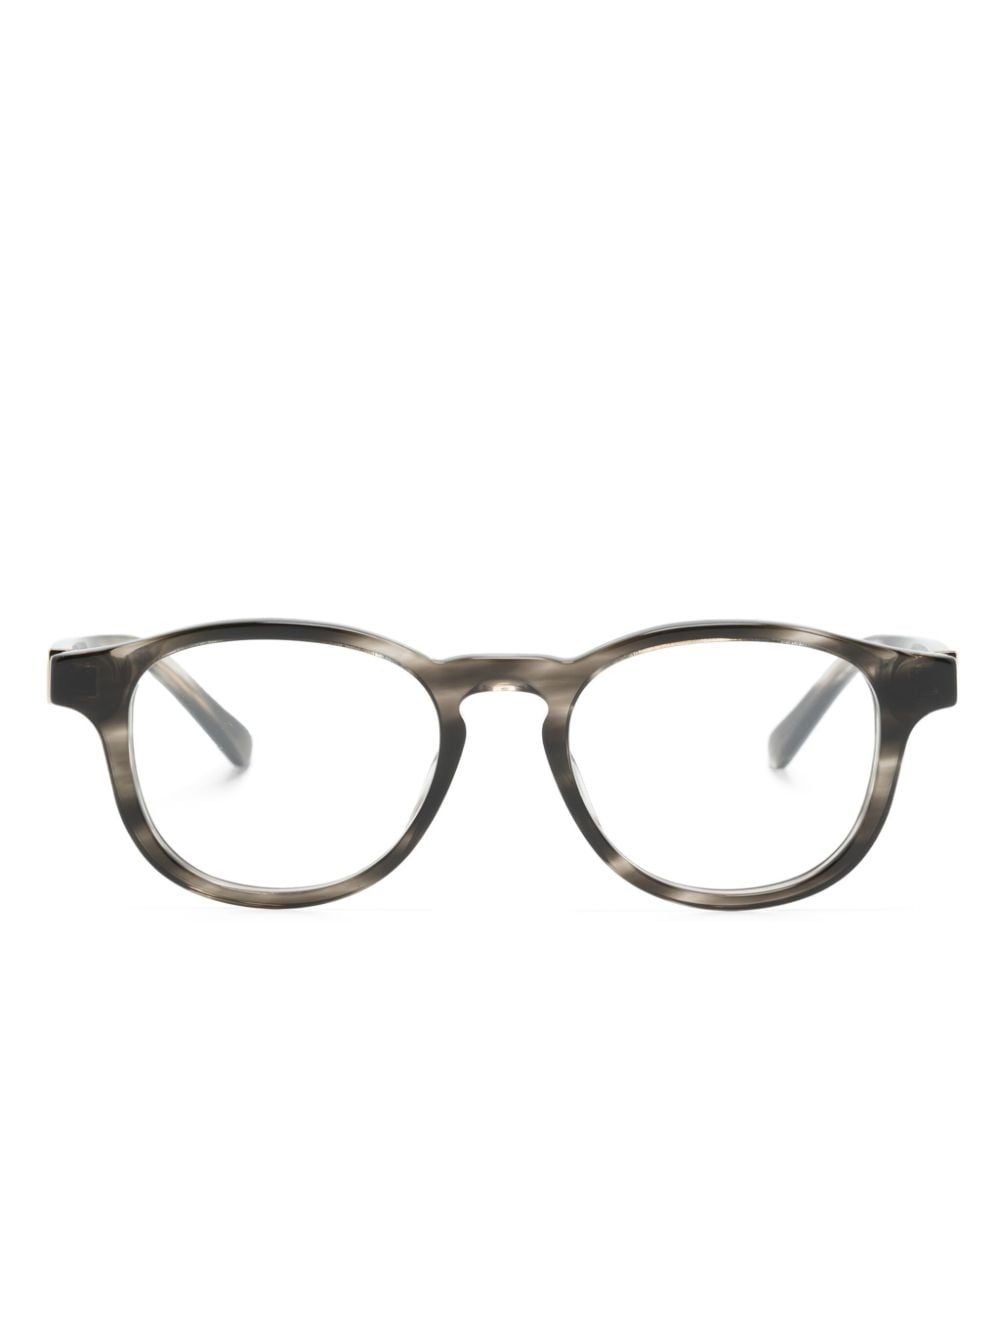 Gucci Eyewear Brille mit rundem Gestell - Braun von Gucci Eyewear